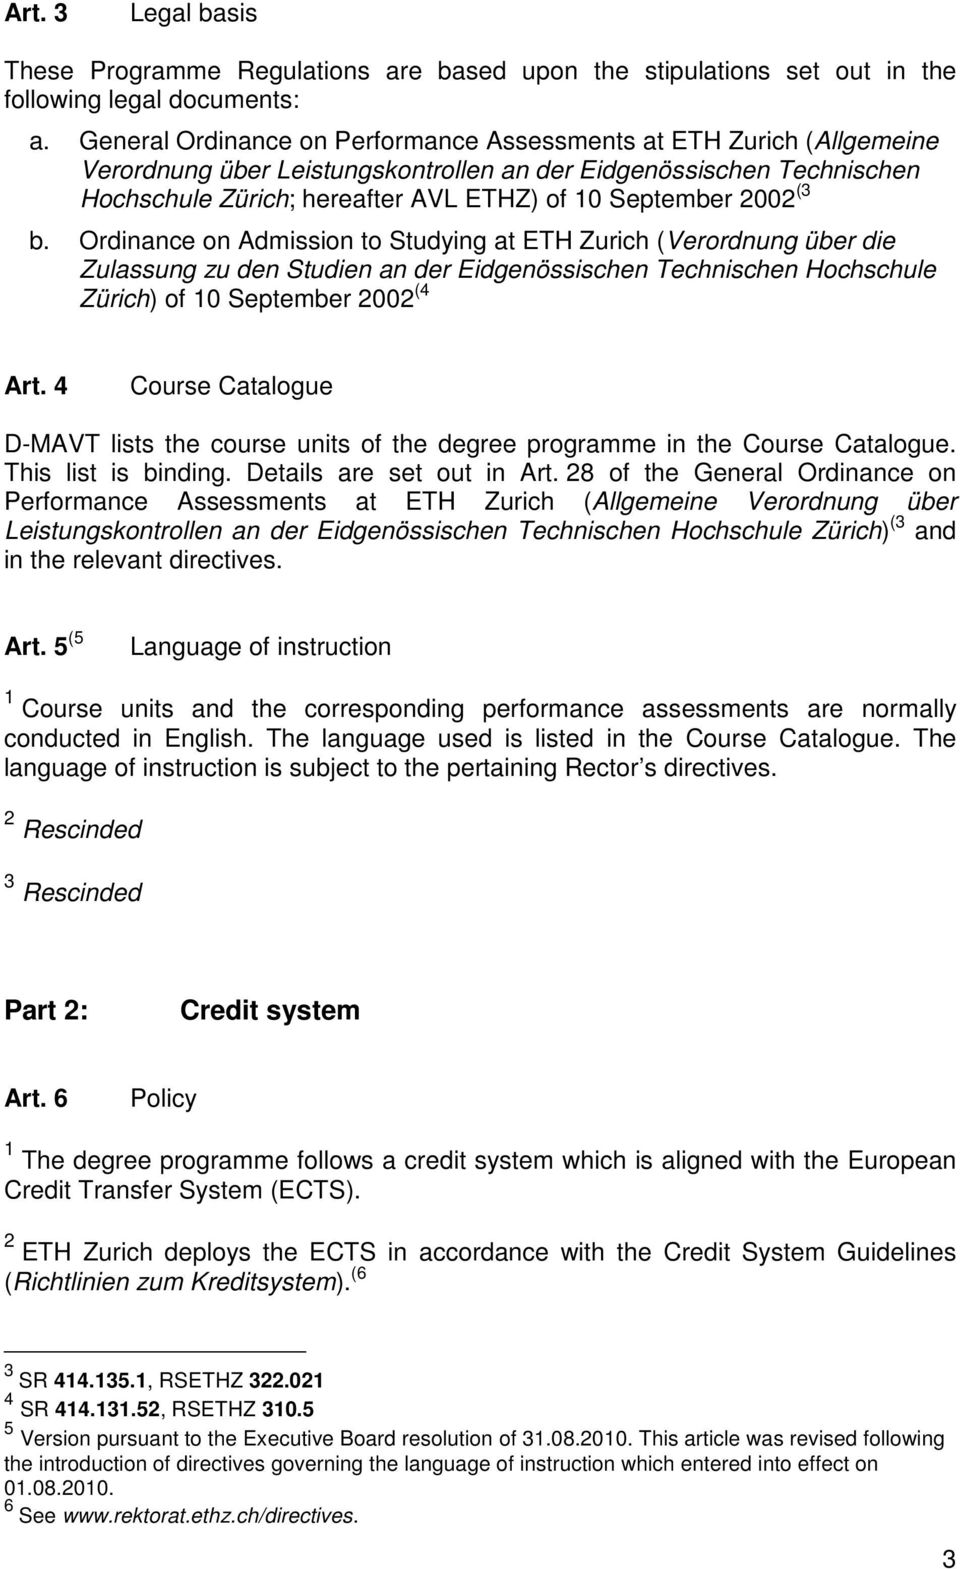 2002 (3 b. Ordinance on Admission to Studying at ETH Zurich (Verordnung über die Zulassung zu den Studien an der Eidgenössischen Technischen Hochschule Zürich) of 10 September 2002 (4 Art.